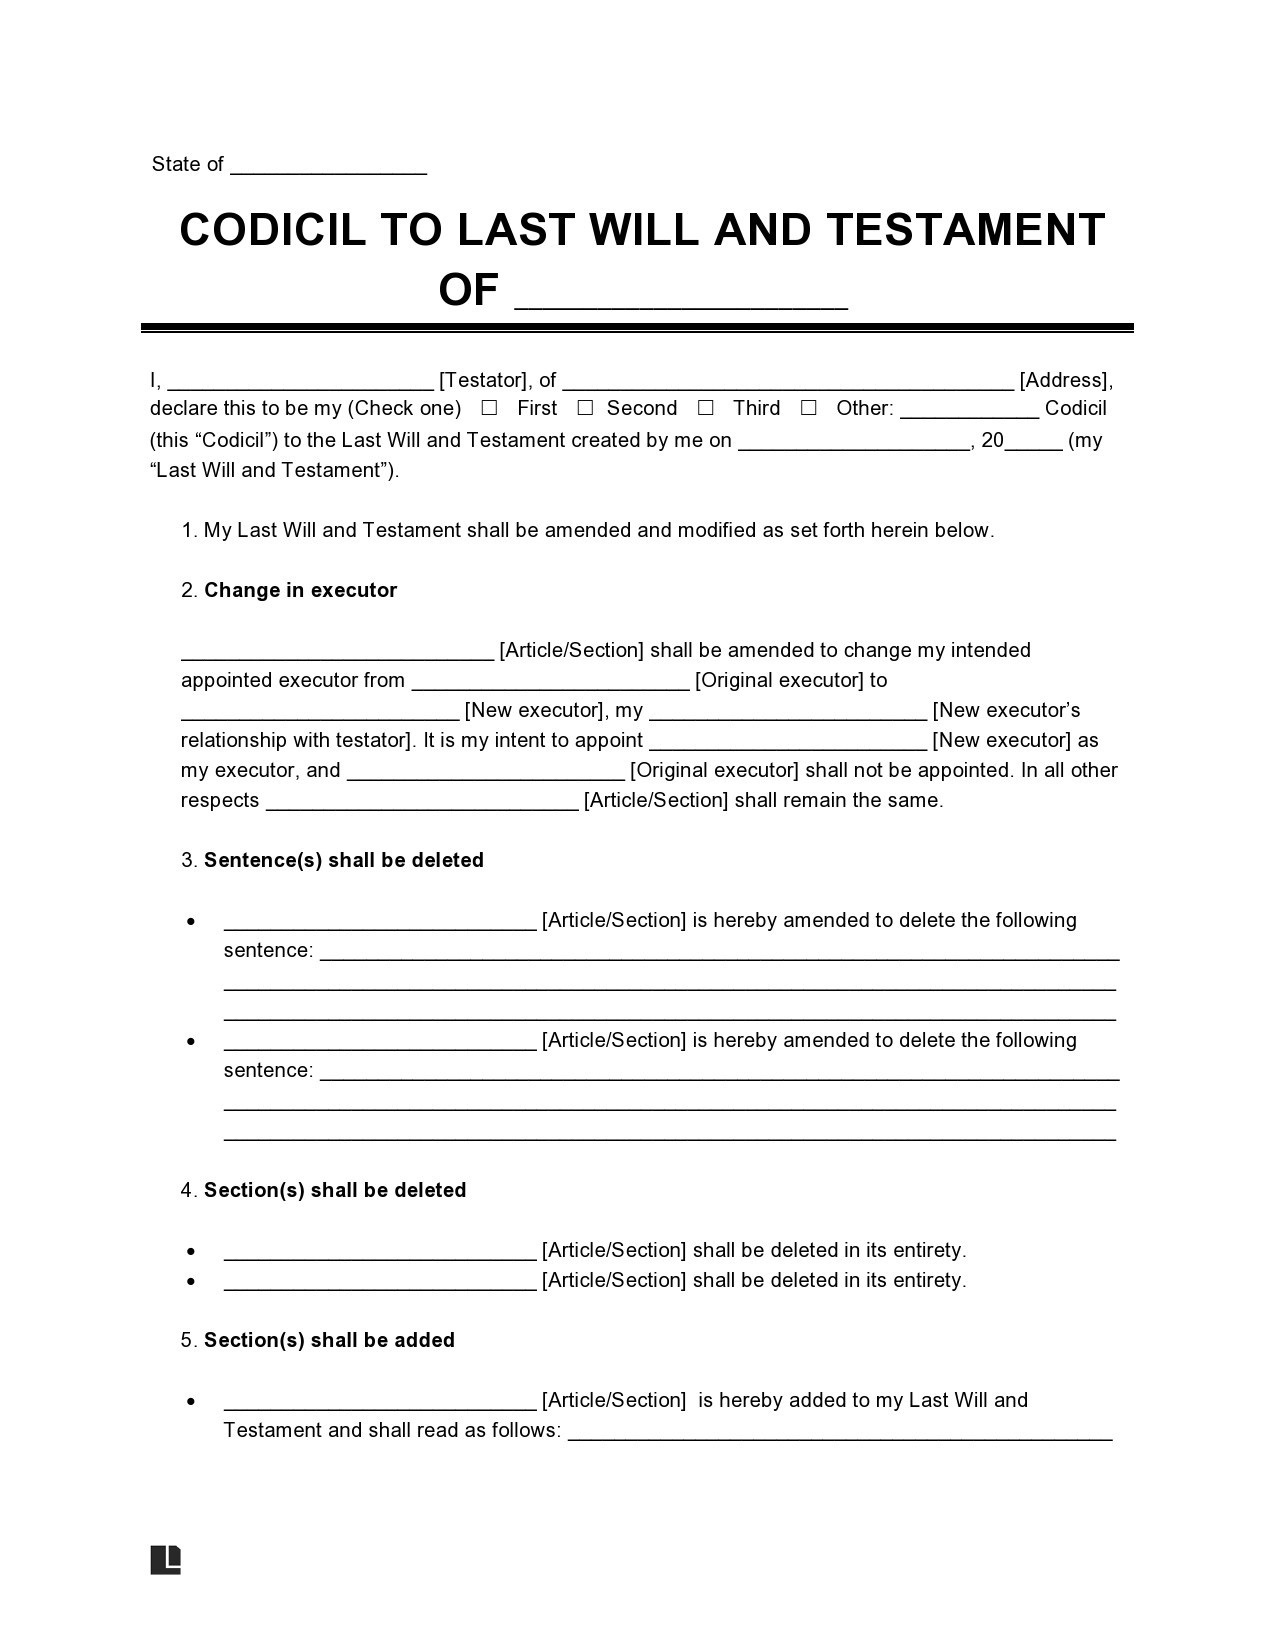 Free codicil form 04